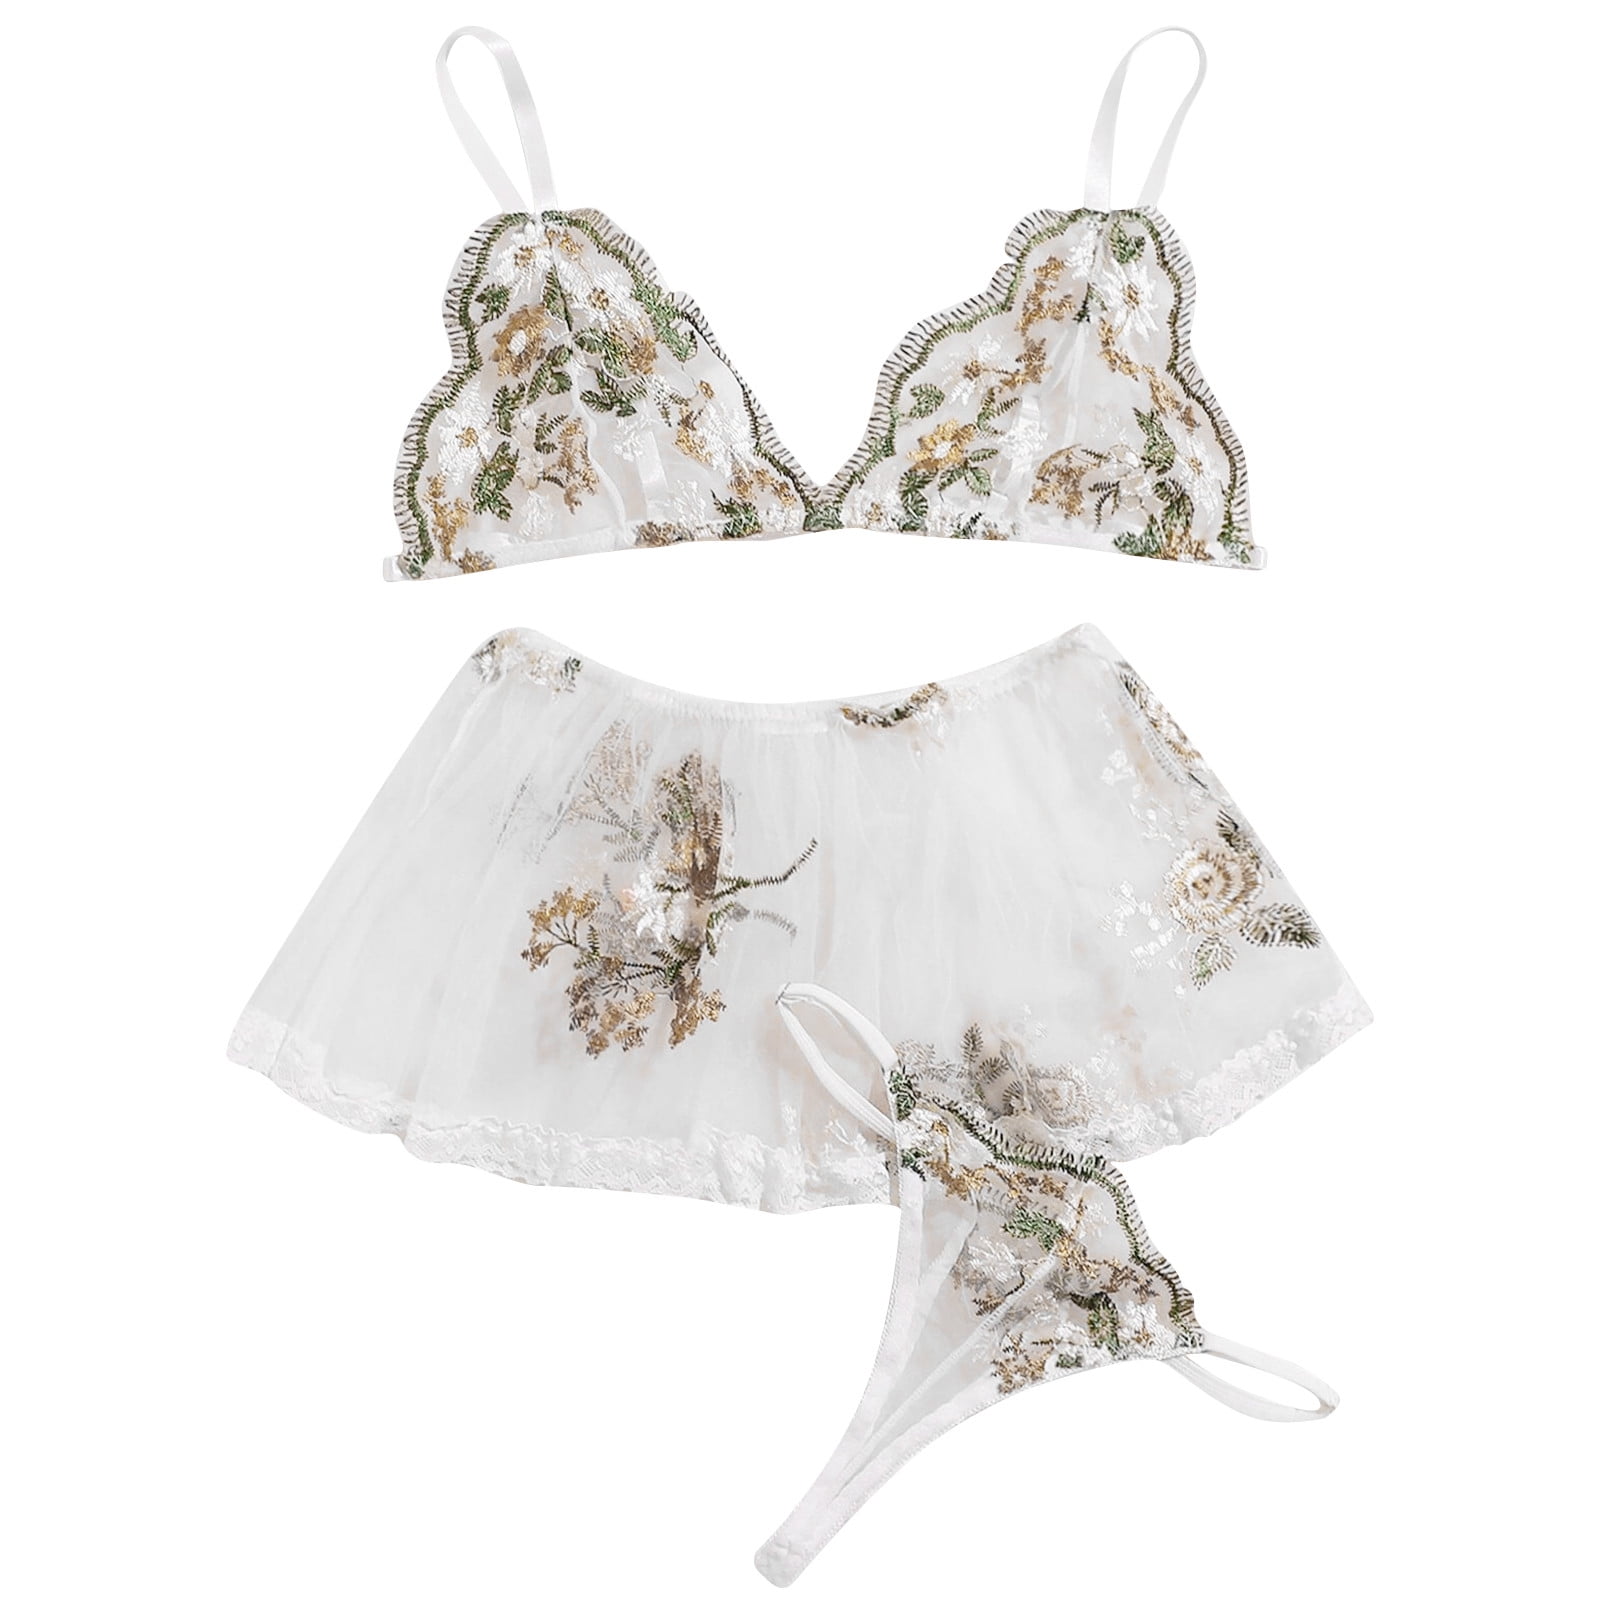 dmqupv Skivvies Underwear Lingerie for Women Floral Lace Lingerie